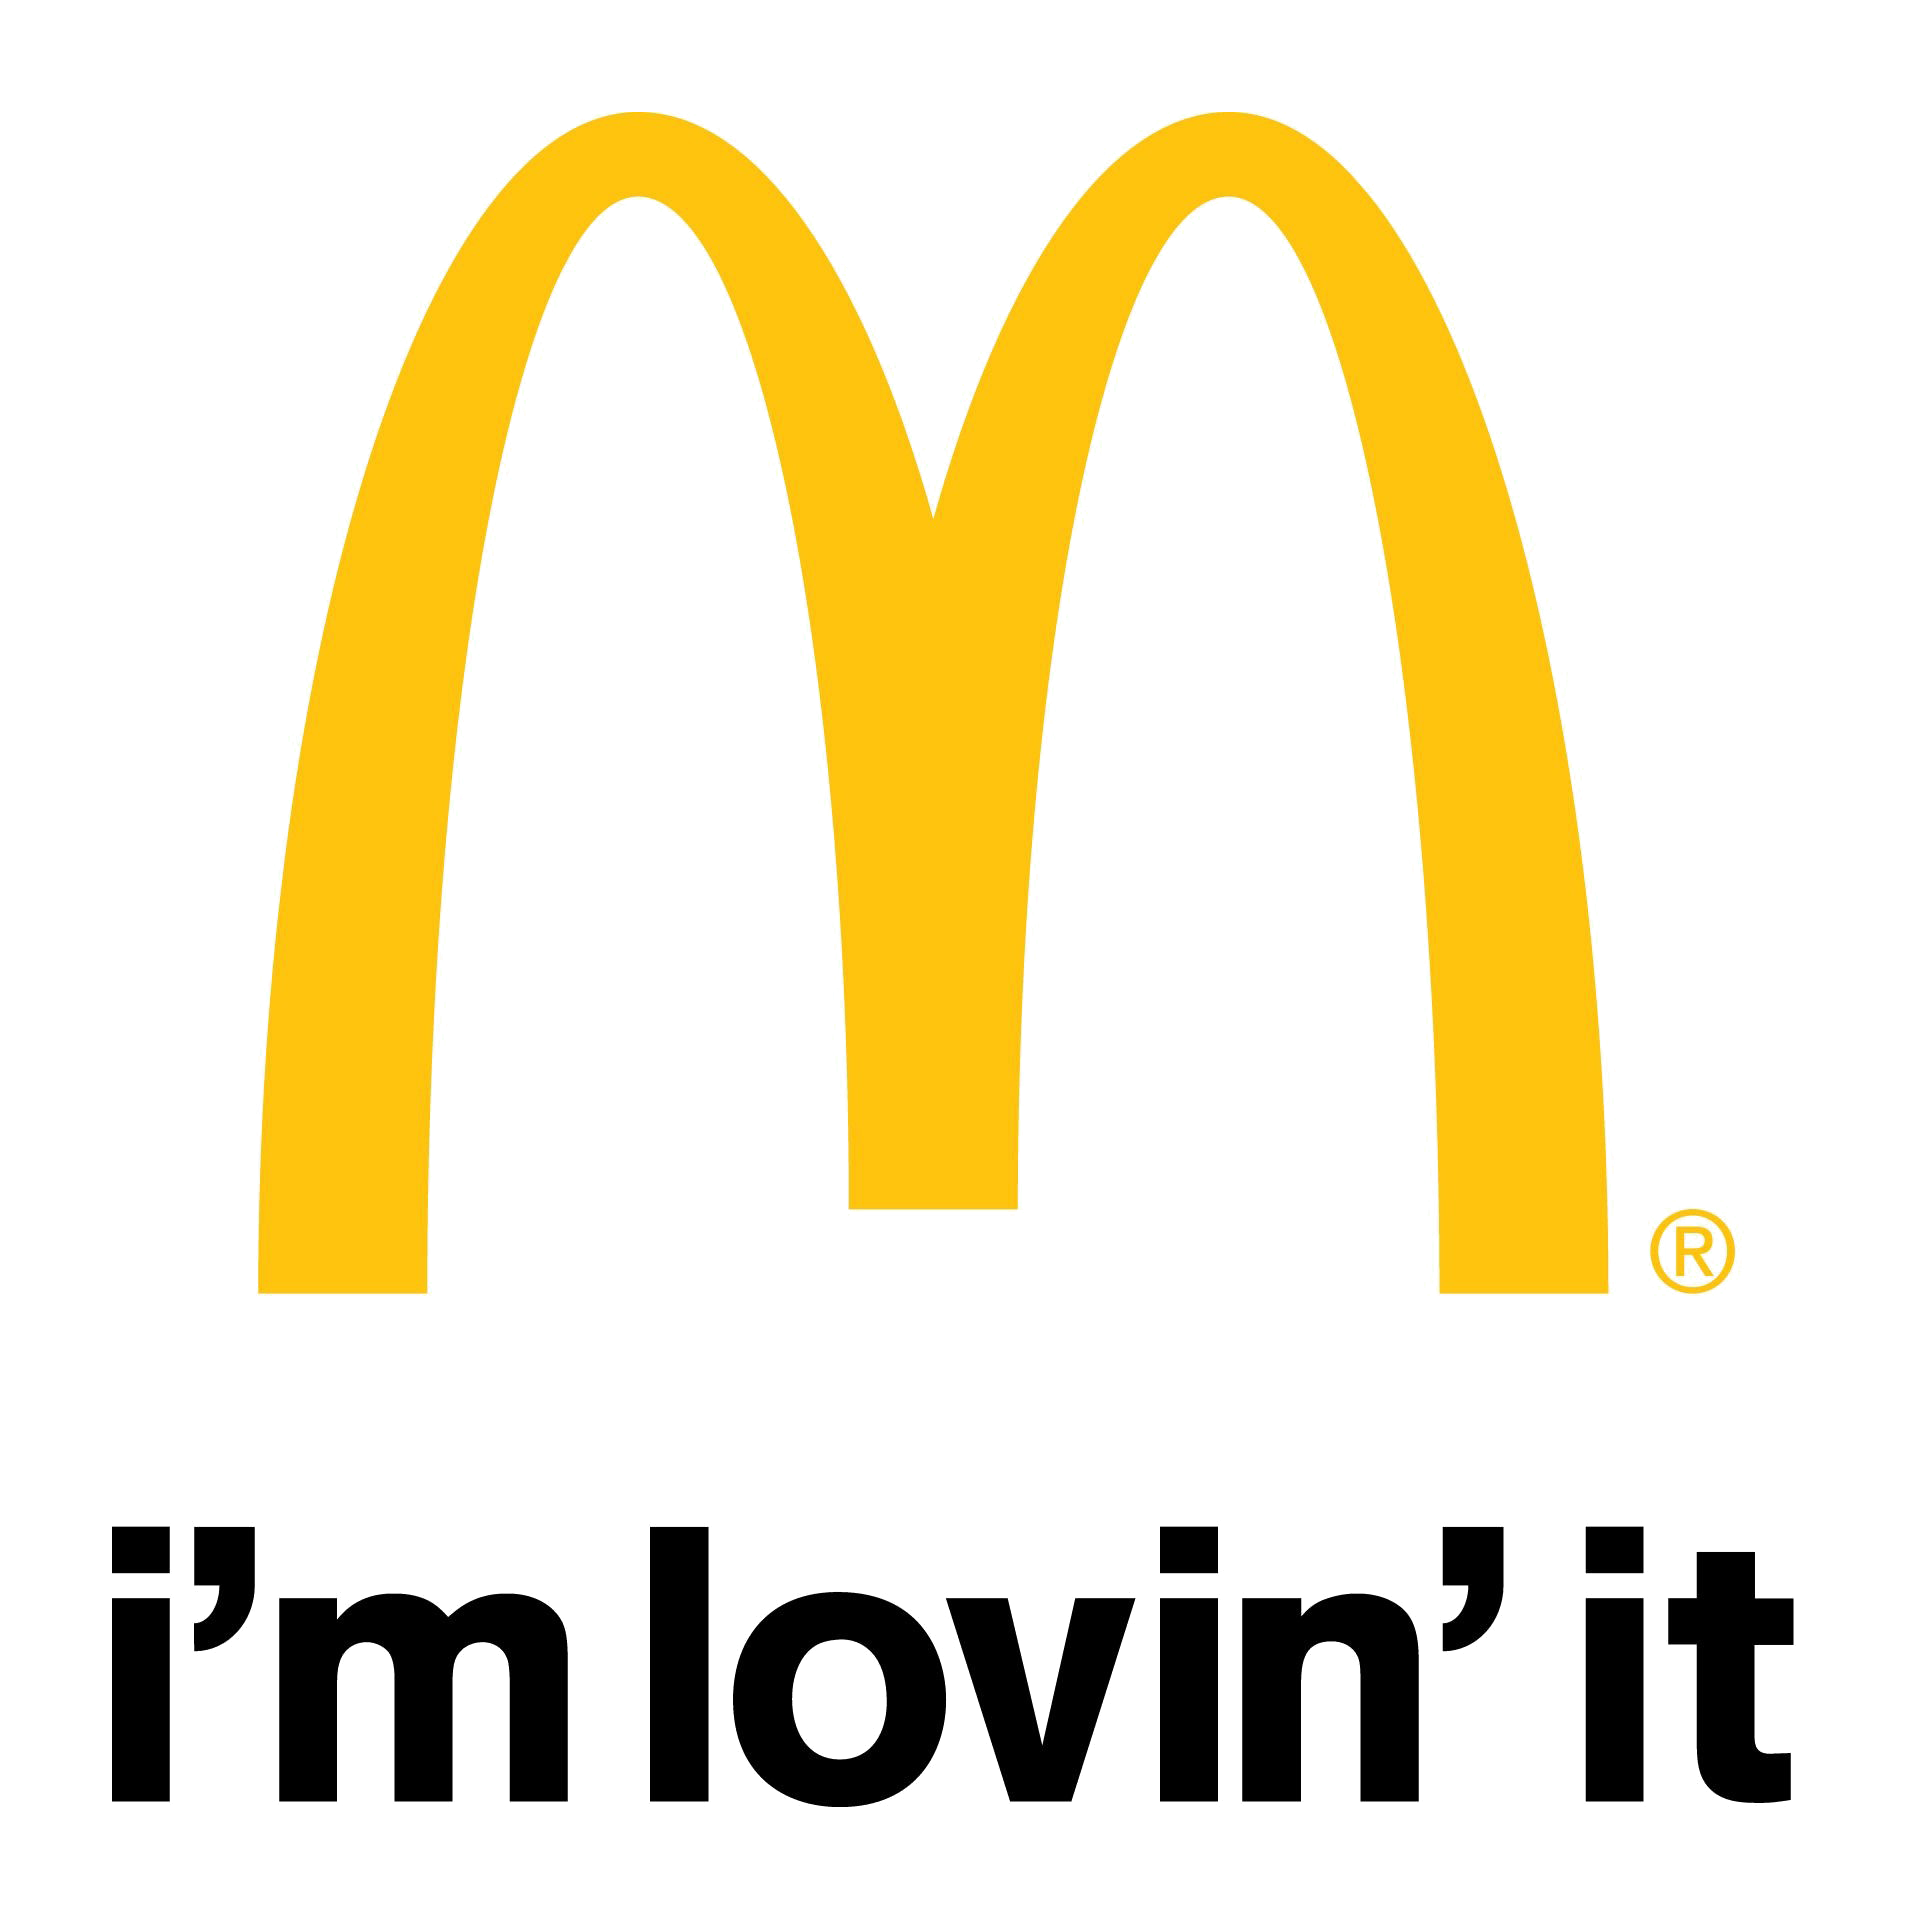 Mcdonald's Logo I Happy Meal, Drive Thru, Mcd Paper Bag, Mcd Totebag,  Mckids I .SVG .PNG Files I Digital Product - Etsy